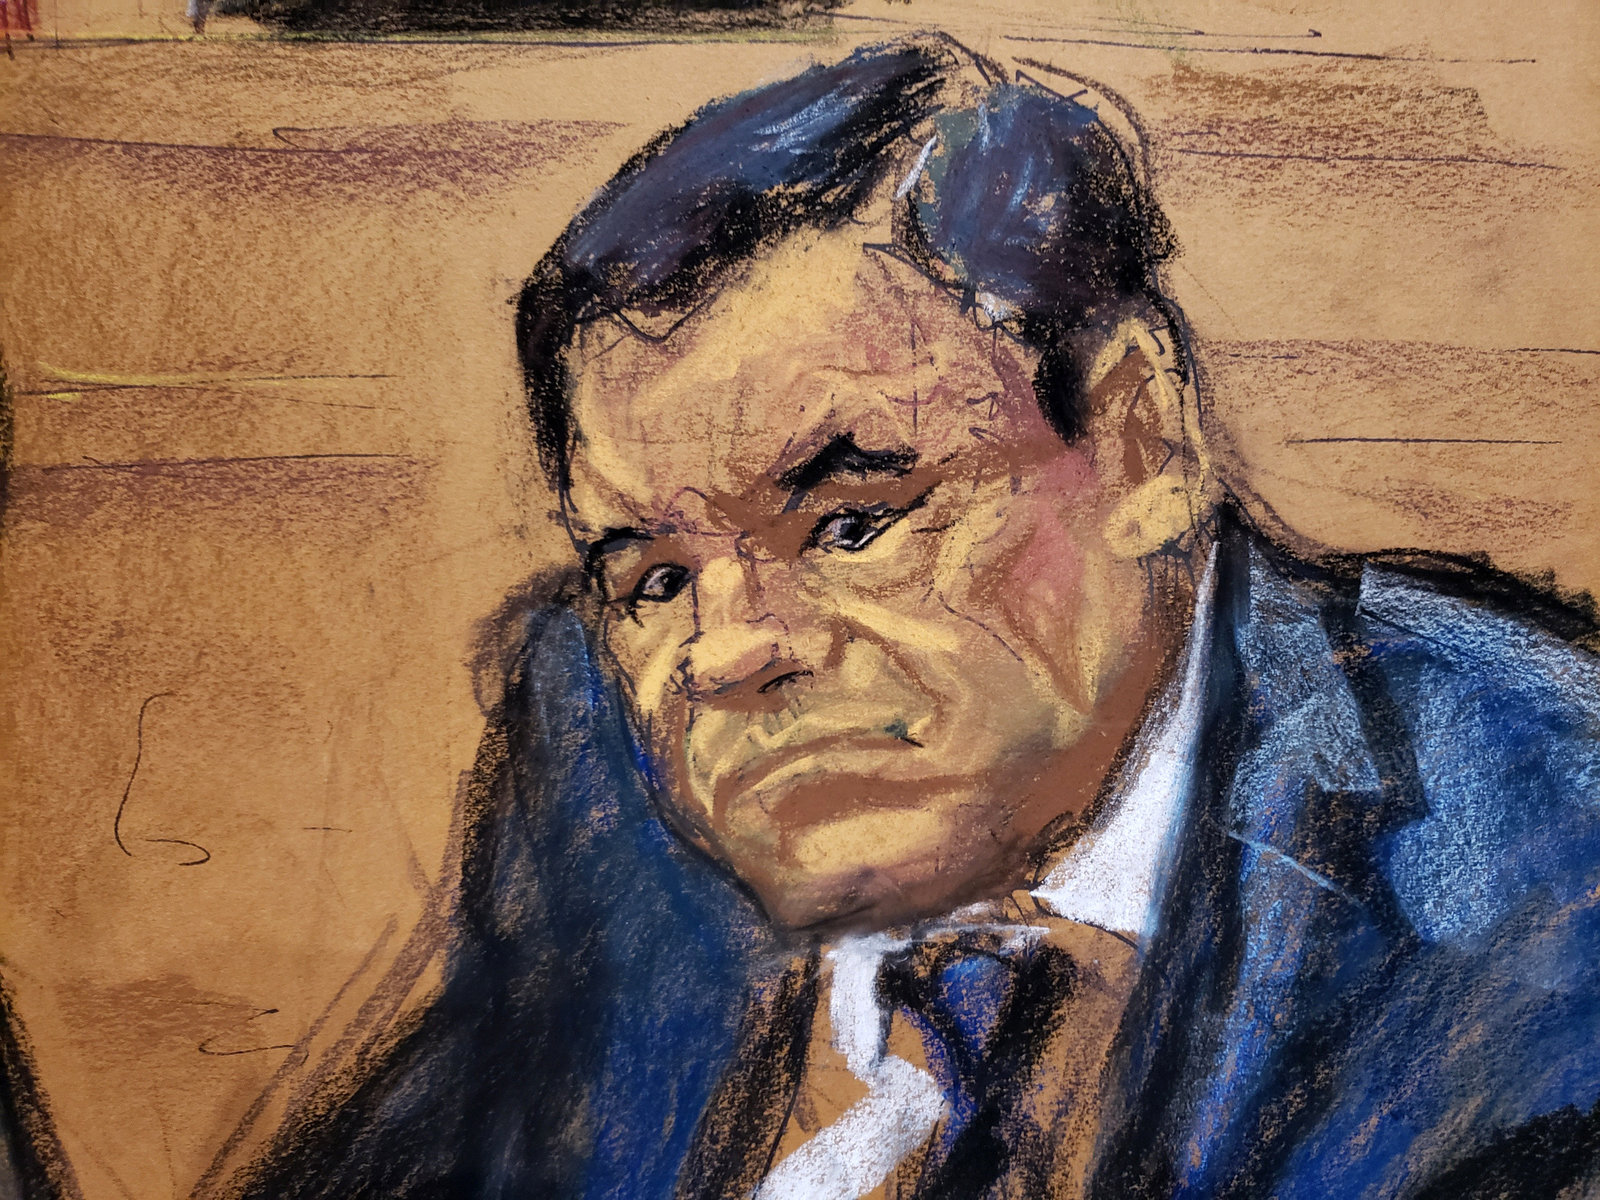 La artista tras los dibujos de 'El Chapo' en la corte